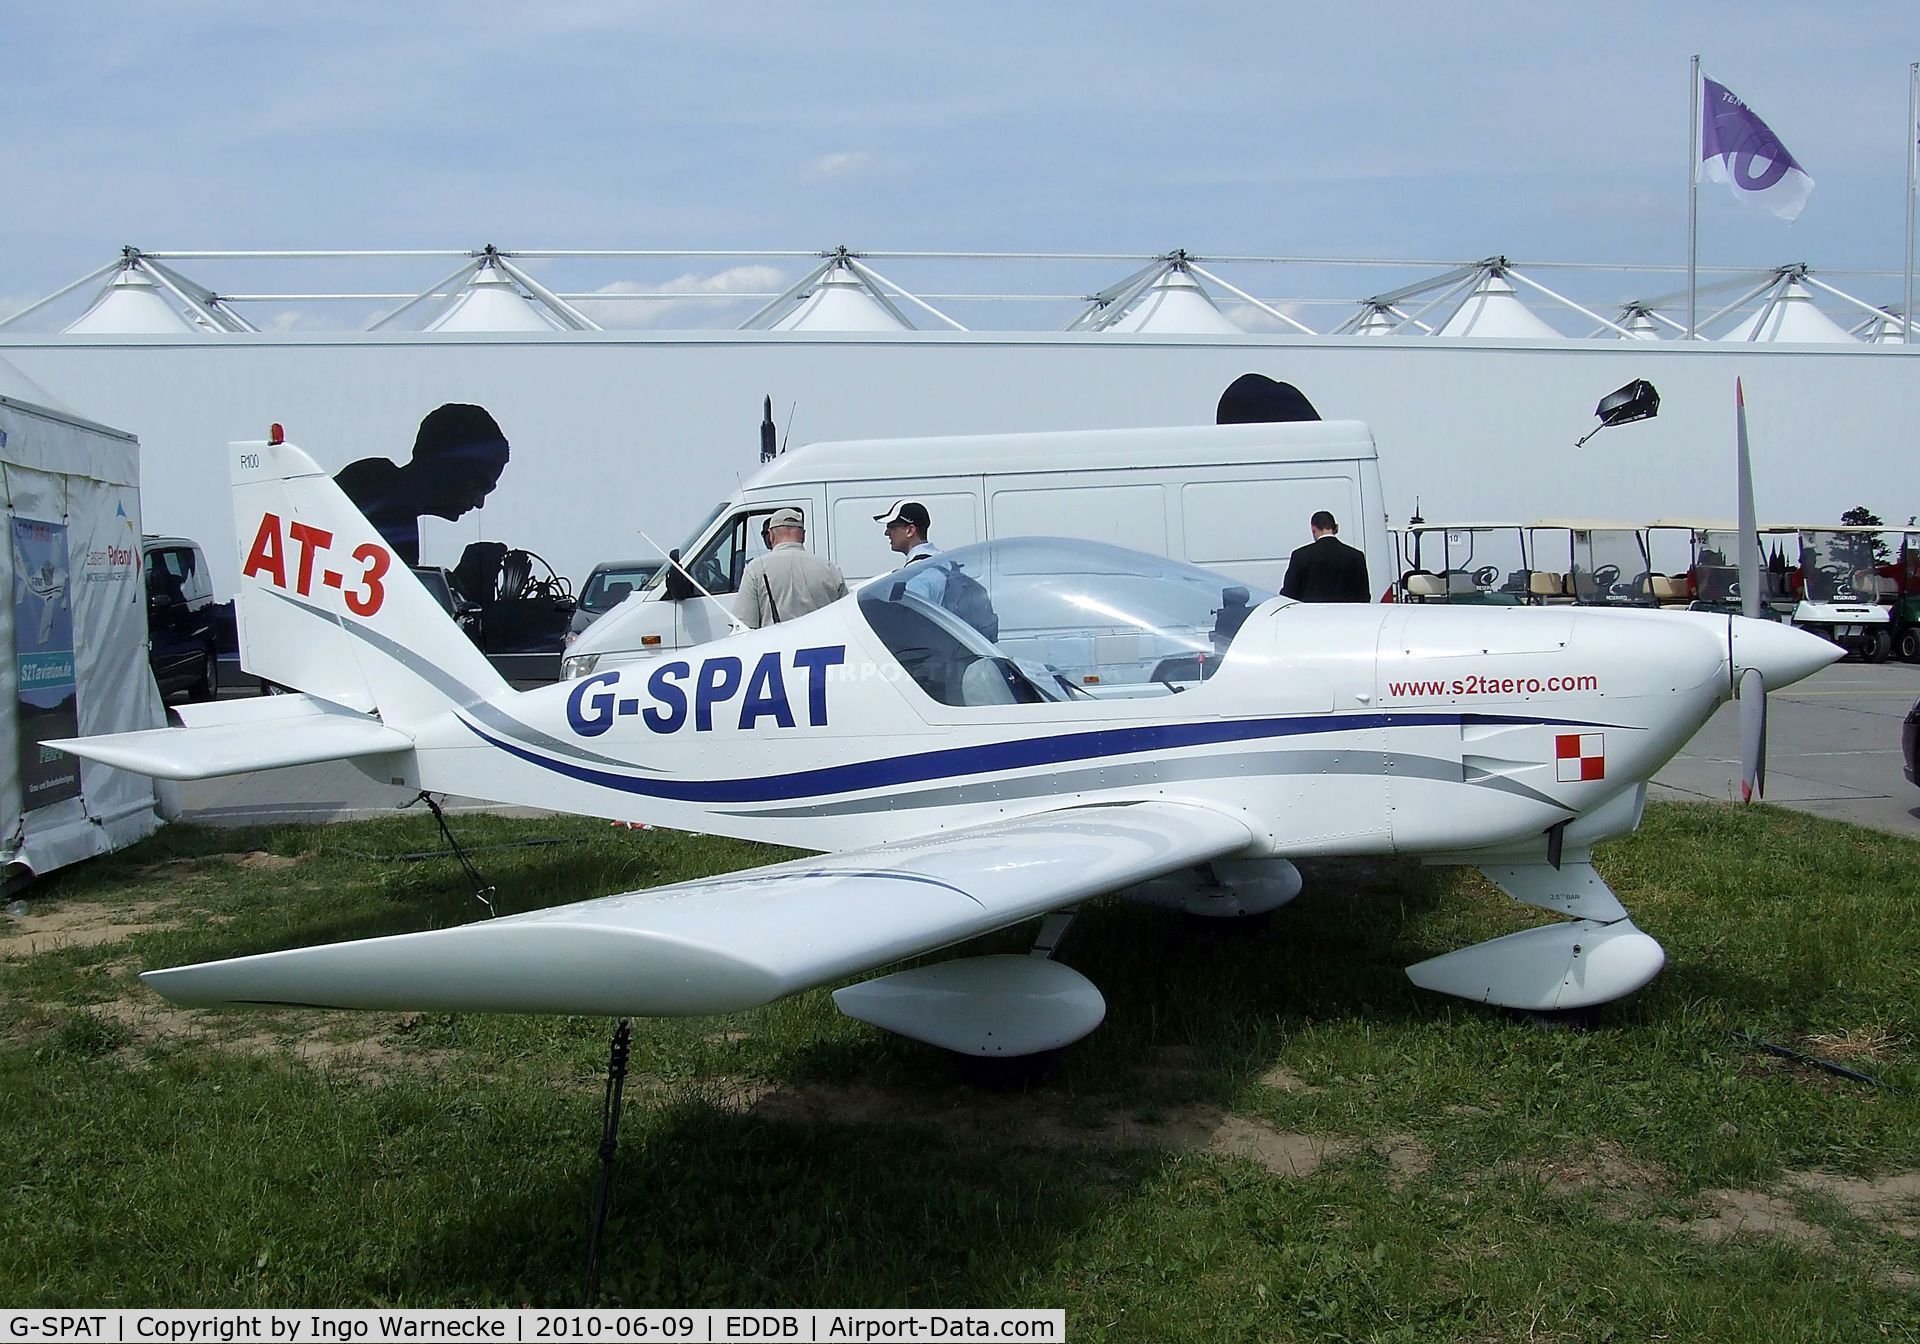 G-SPAT, 2003 Aero AT-3 R100 C/N AT3-008, Aero AT-3 R100 at ILA 2010, Berlin